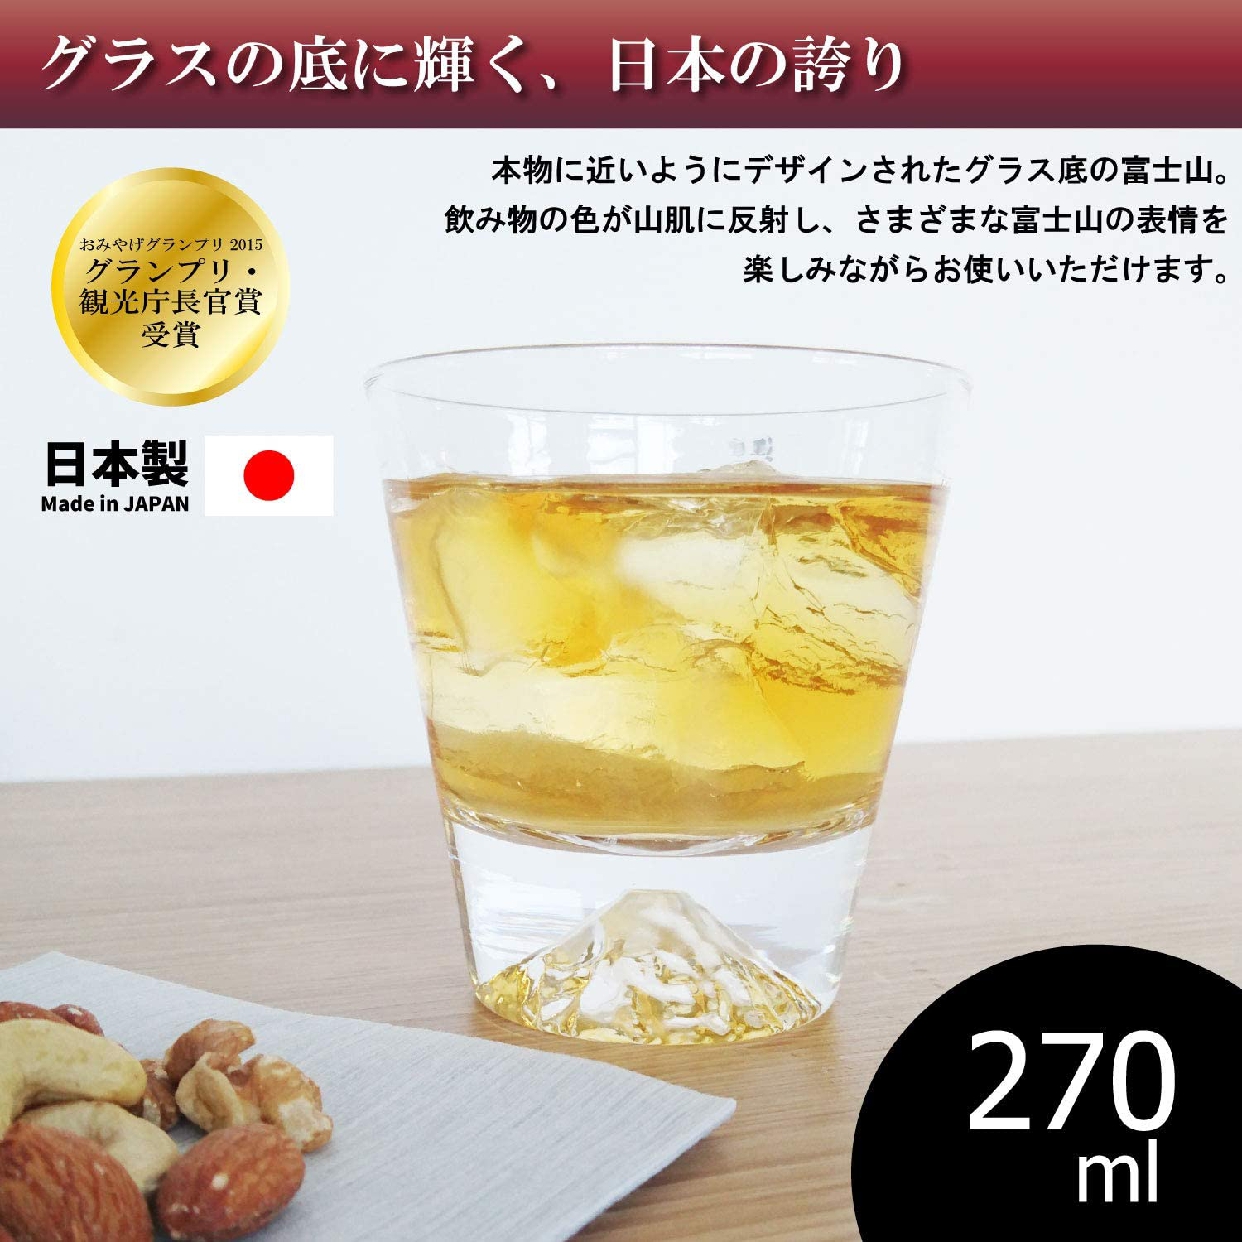 江戸硝子(エドガラス) 富士山グラス ロックグラス 270ml  TG15-015-Rの商品画像サムネ2 